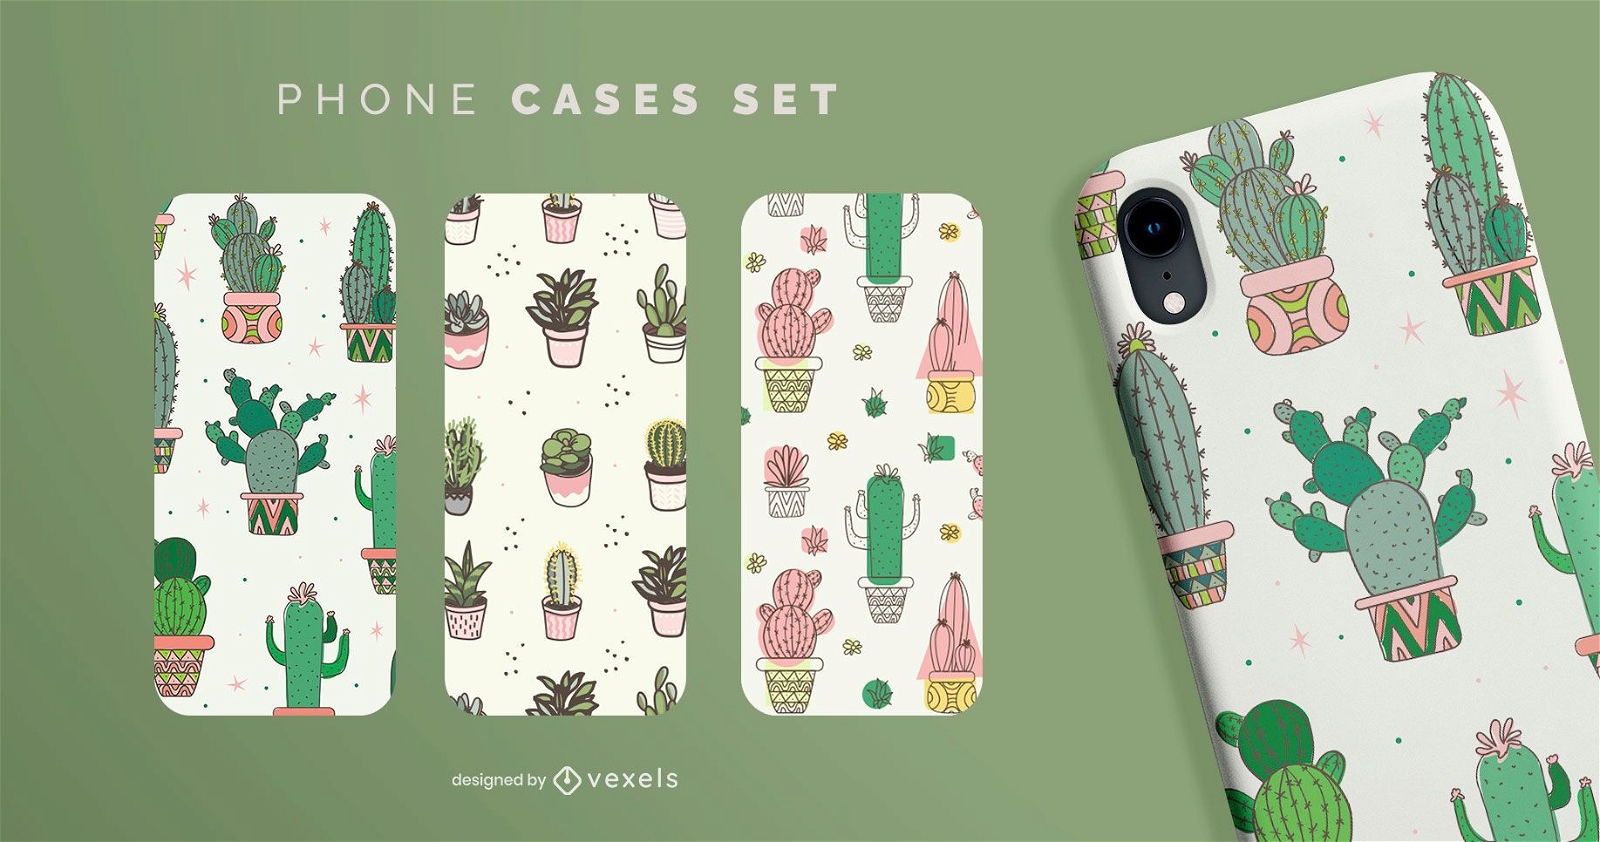 Cactus phone case set